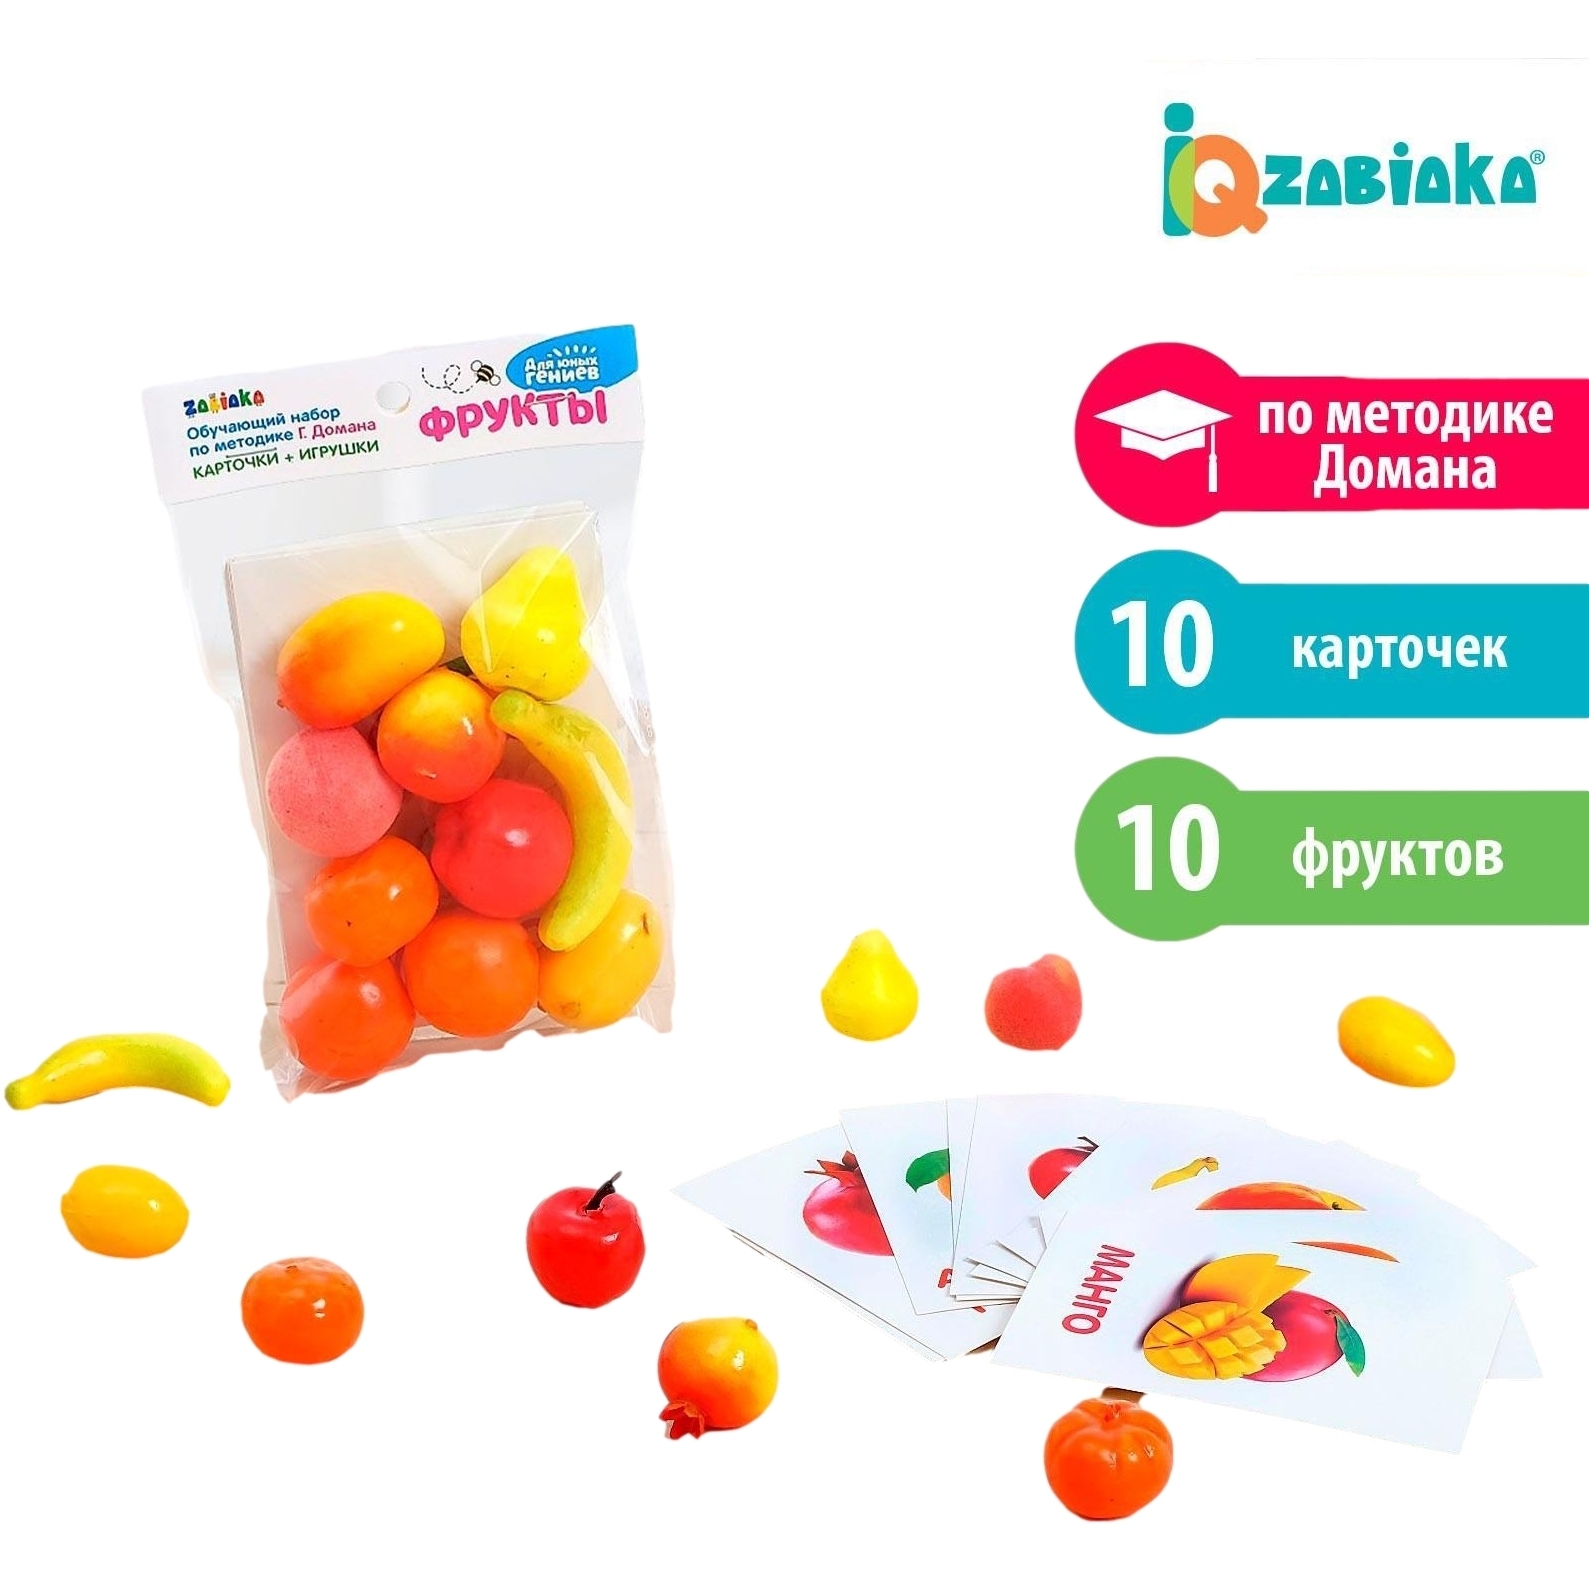 Обучающий набор по методике Г. Домана Zabiaka "Фрукты" (10 карточек, 10 фруктов)